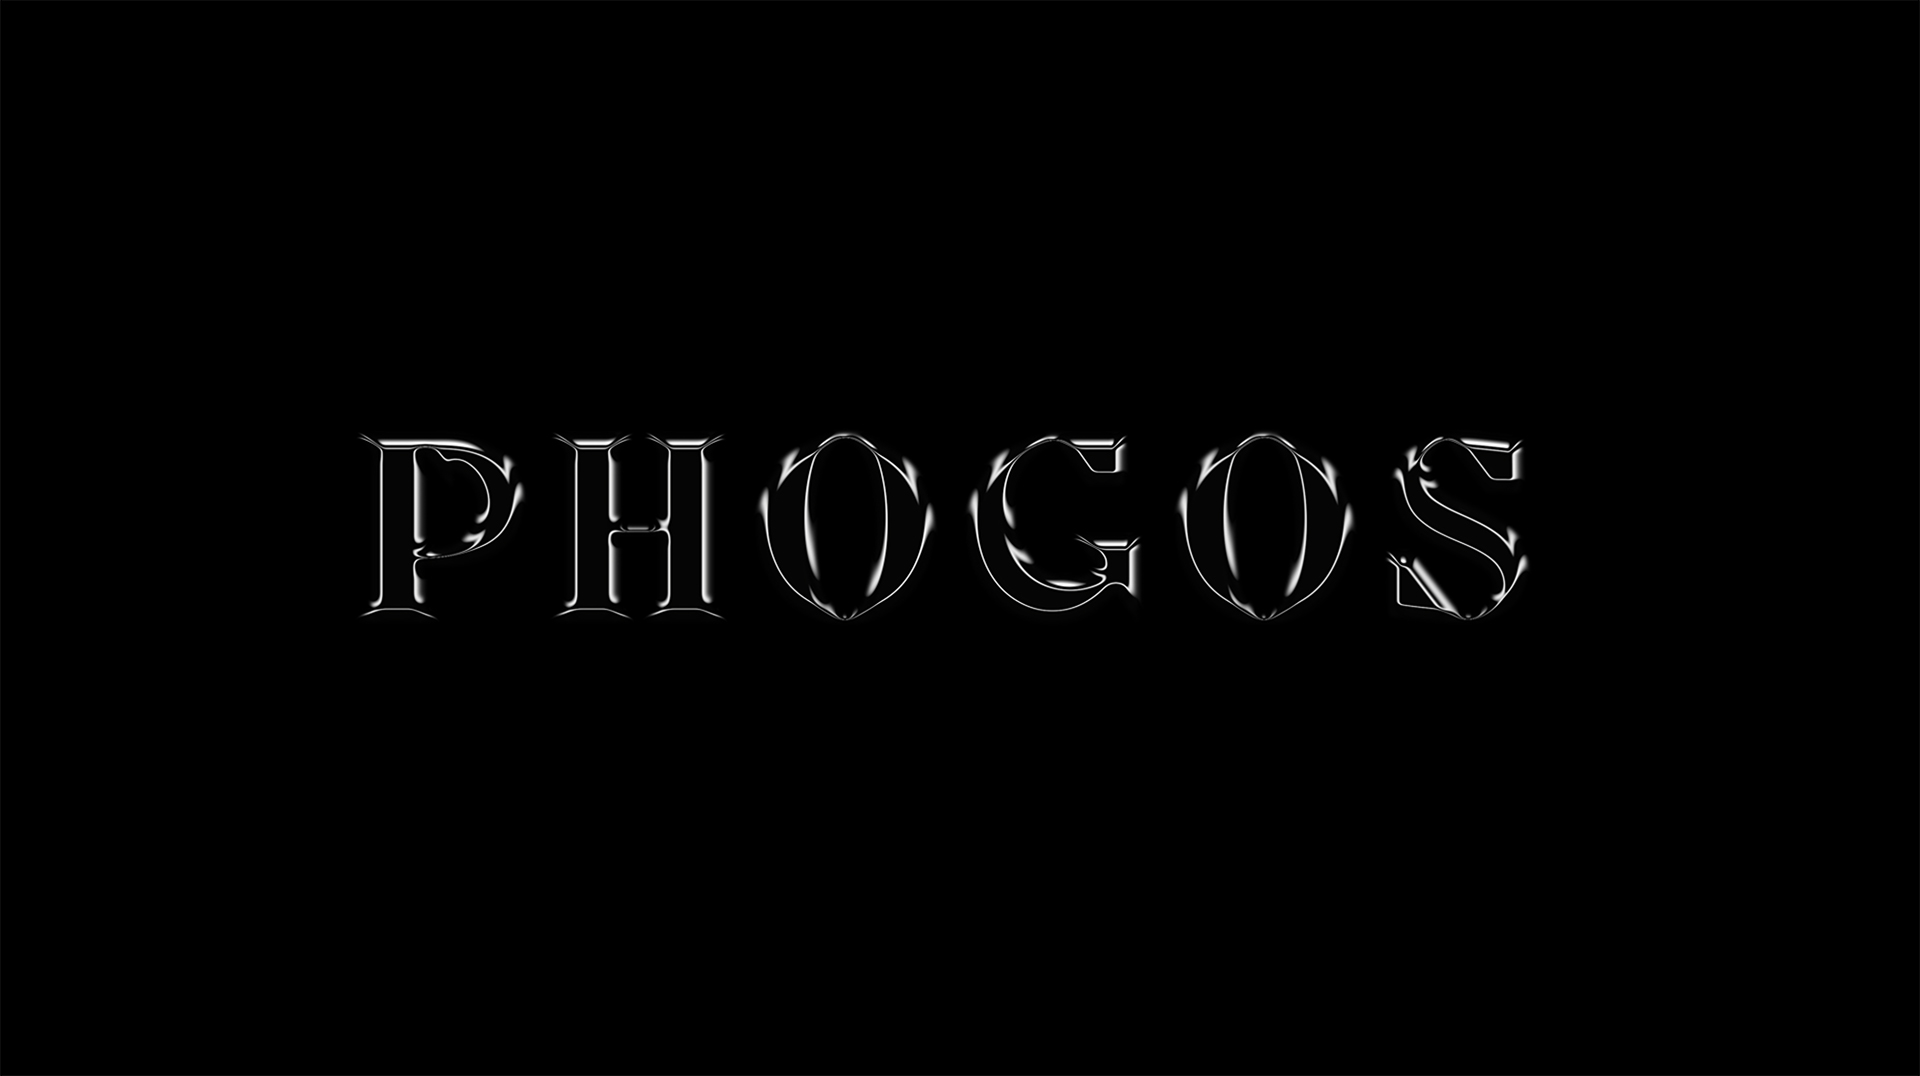 Diseño de branding y marca para Phogos Extintores, diseño de marca